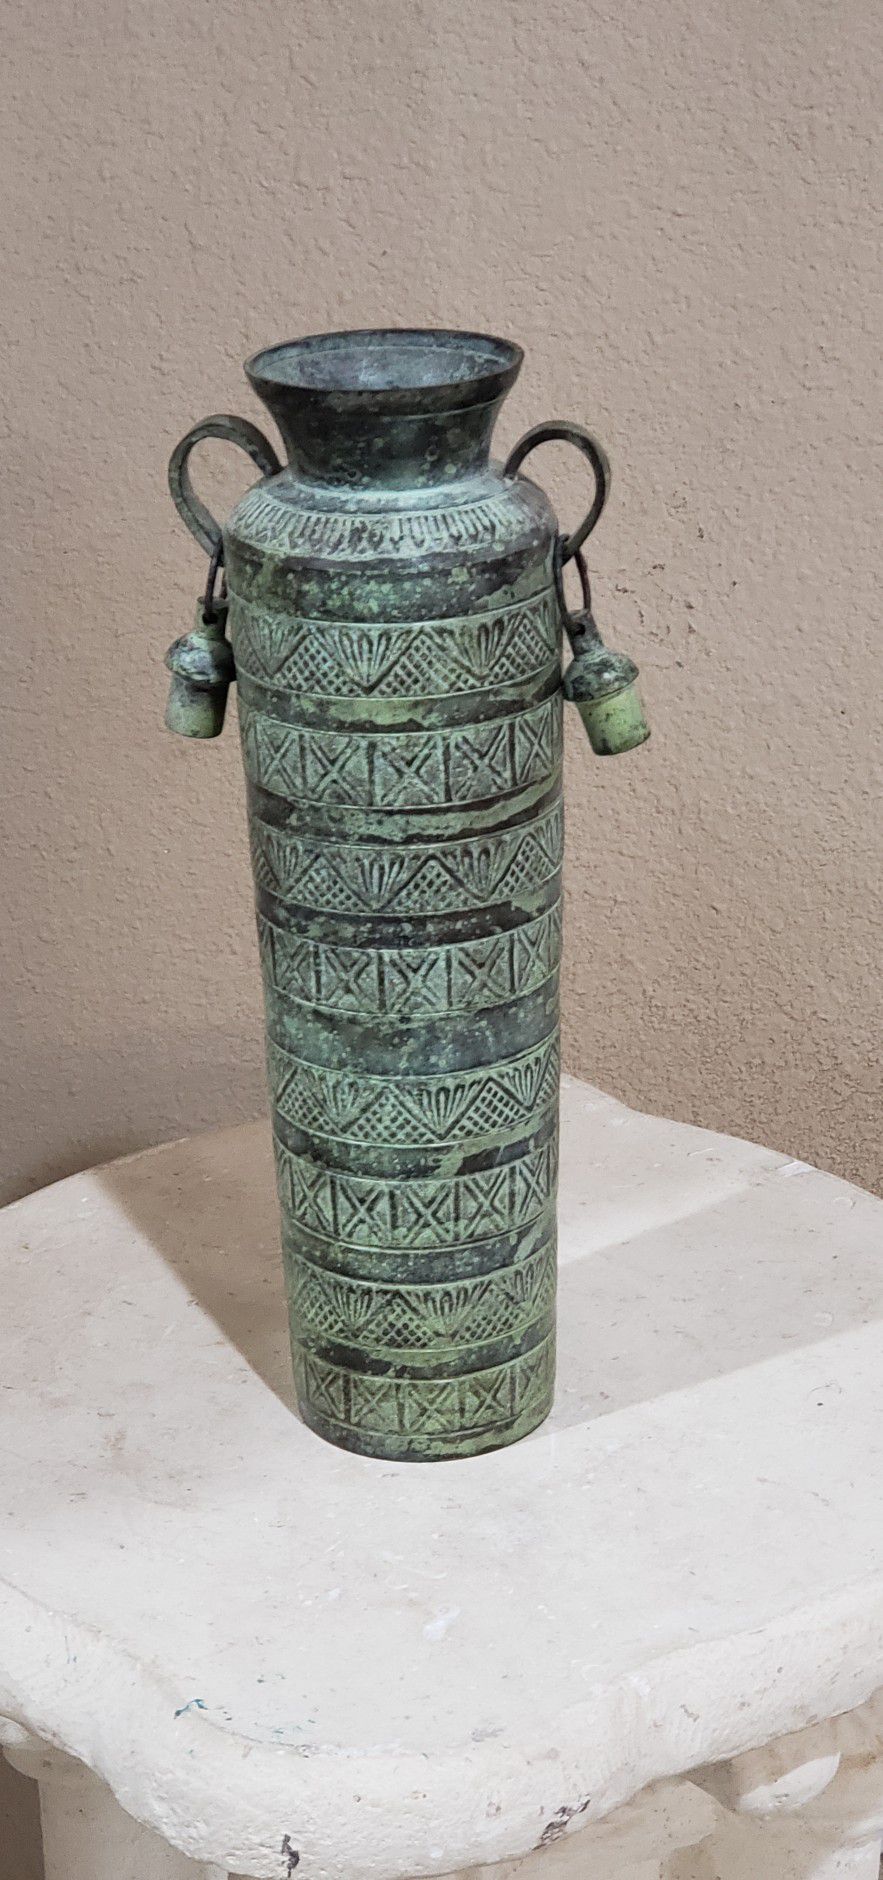 20lb Antique Cast Iron Oriental Vase 5in x 12.5in